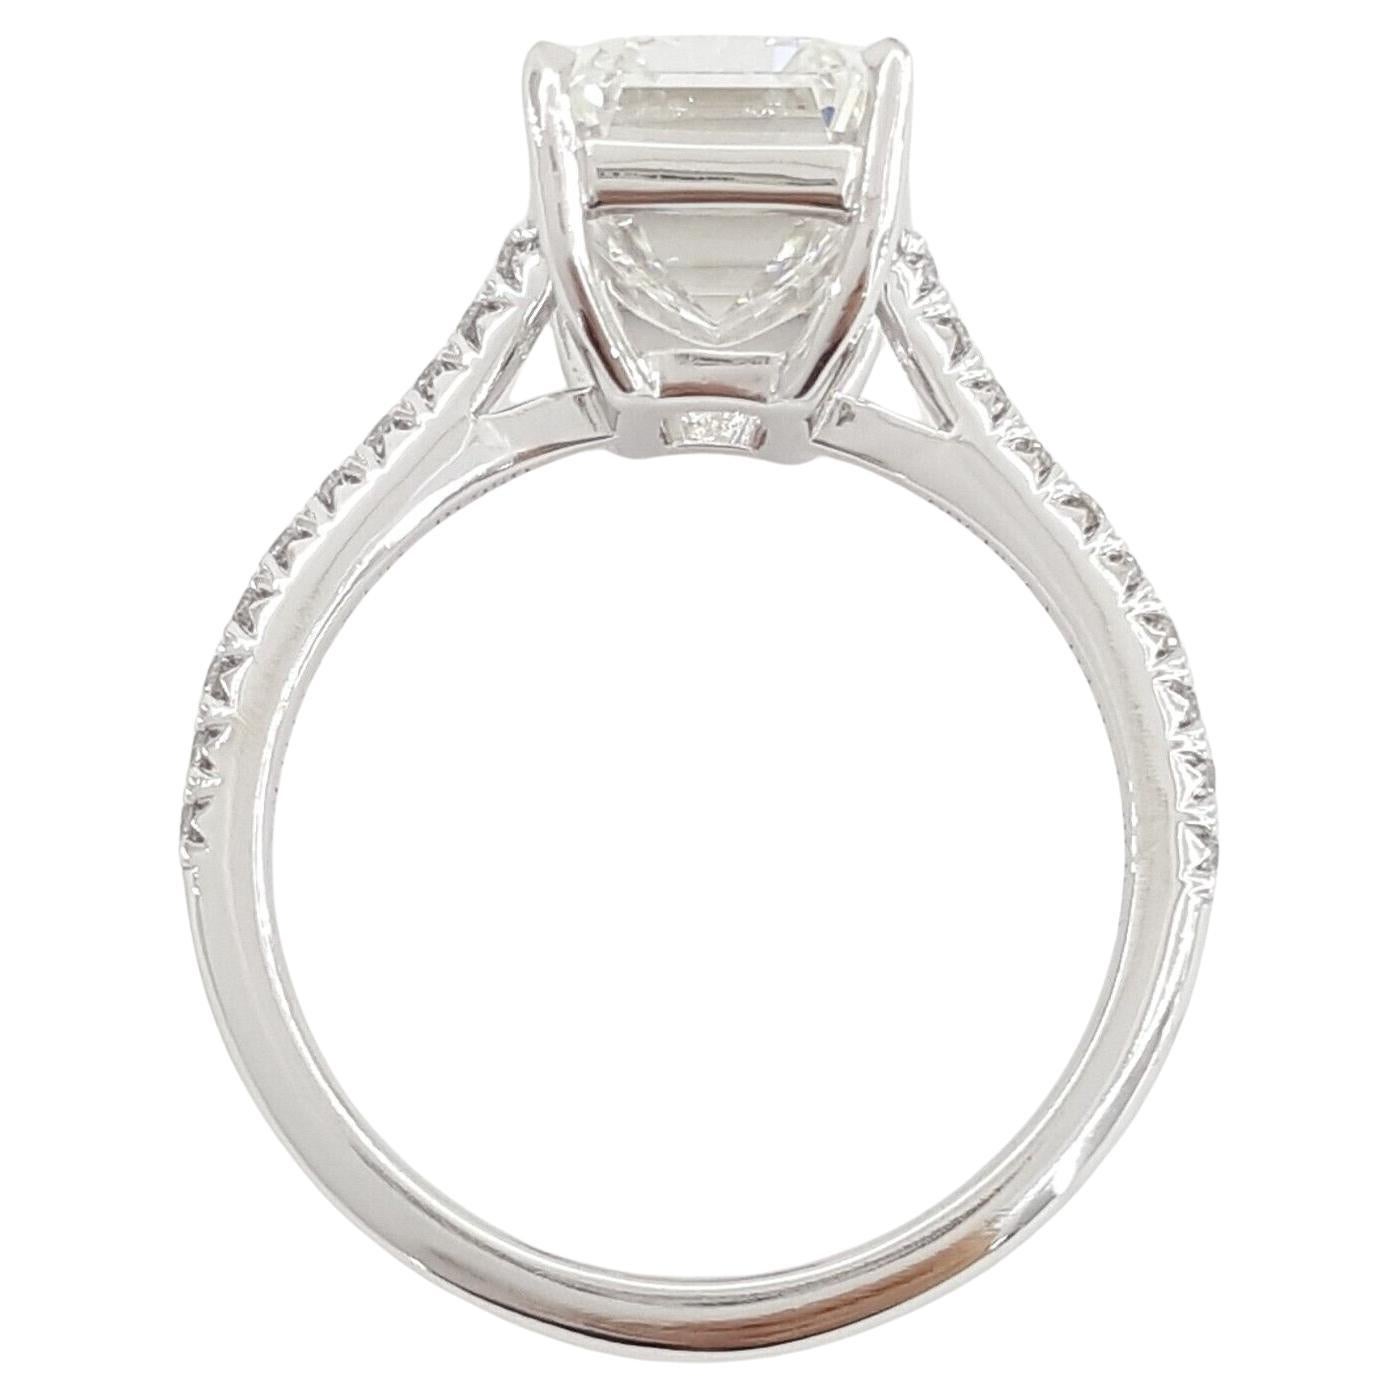 4 carat emerald-cut diamond ring tiffany